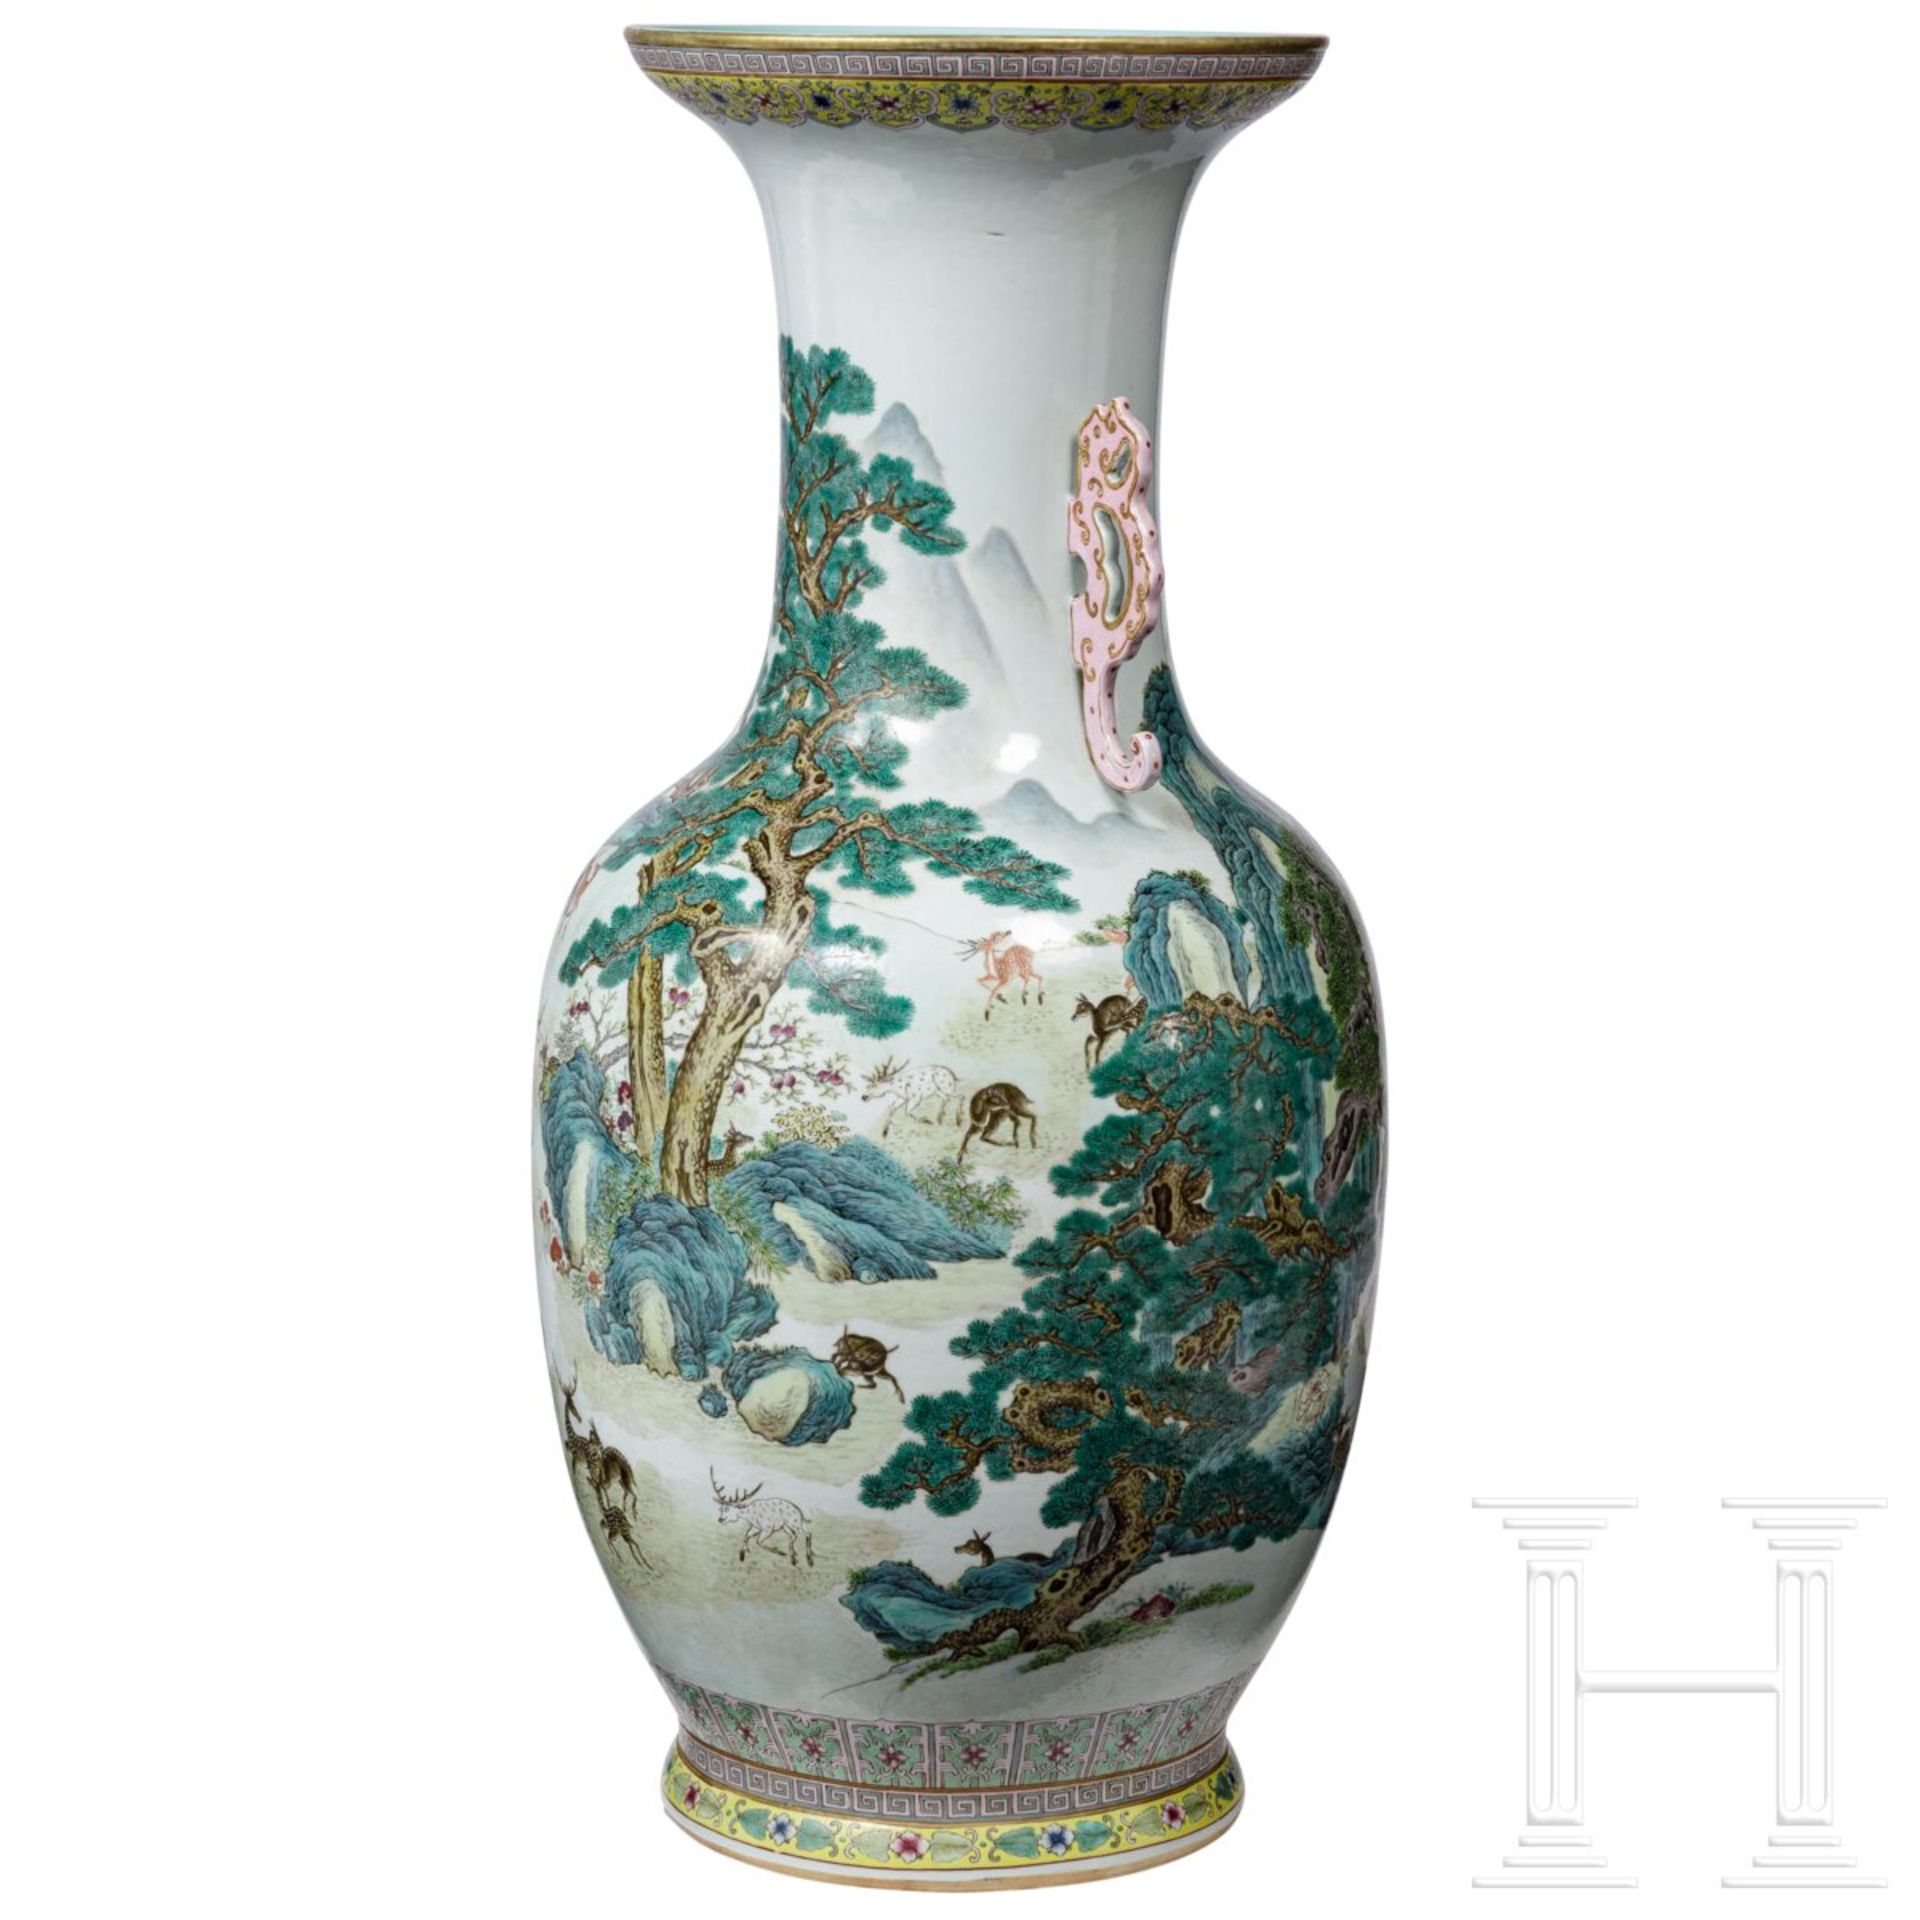 Monumentale Famille-rose-Vase mit "Hundert-Hirsche-Dekor", späte Qing-Dynastie oder frühe Republik,  - Bild 4 aus 24